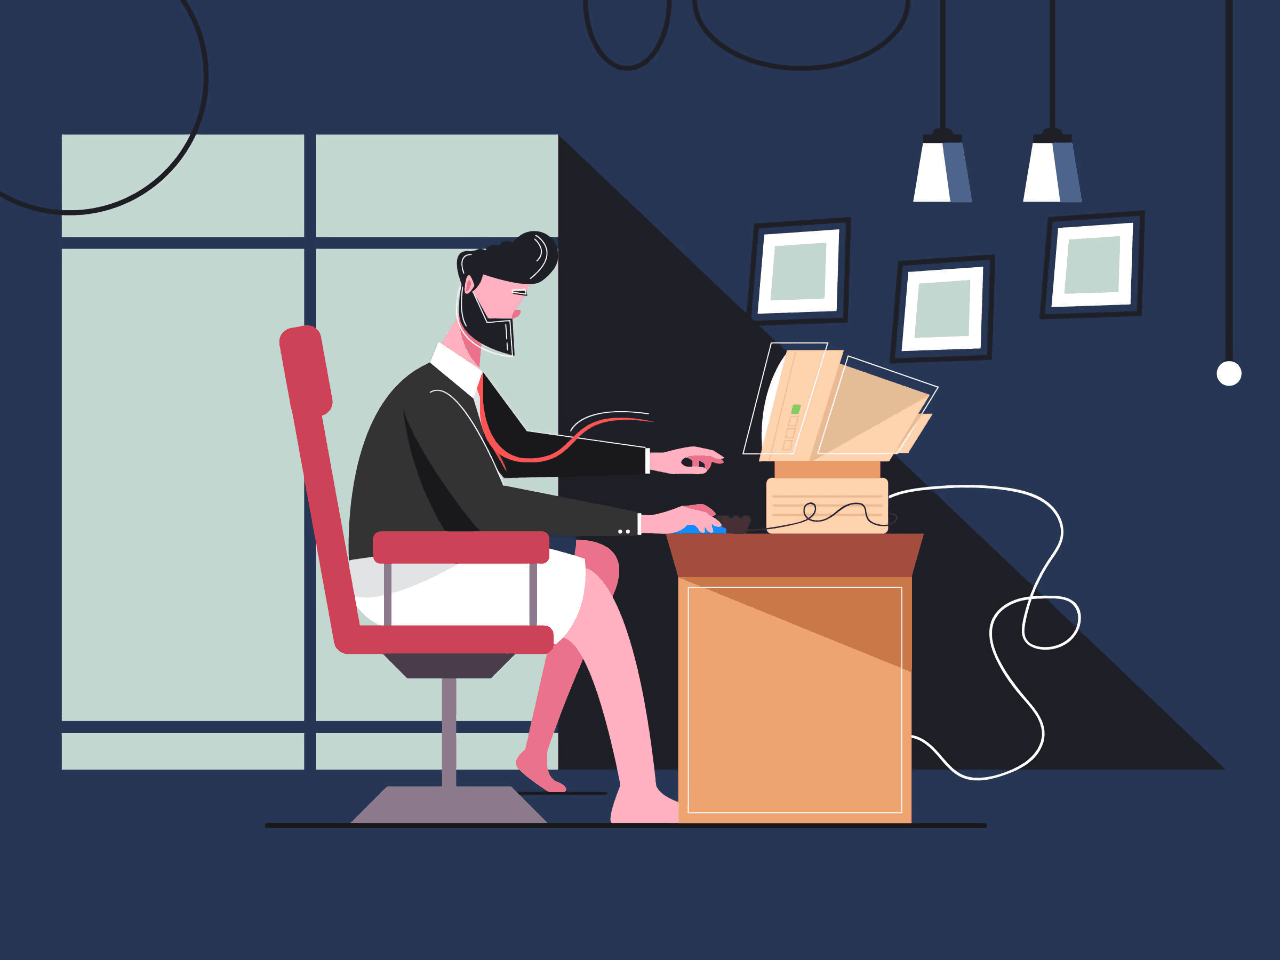 Рисованный мужчина сидит в тёмной комнате напротив окна за компьютером в галстуке и пиджаке, но без брюк.